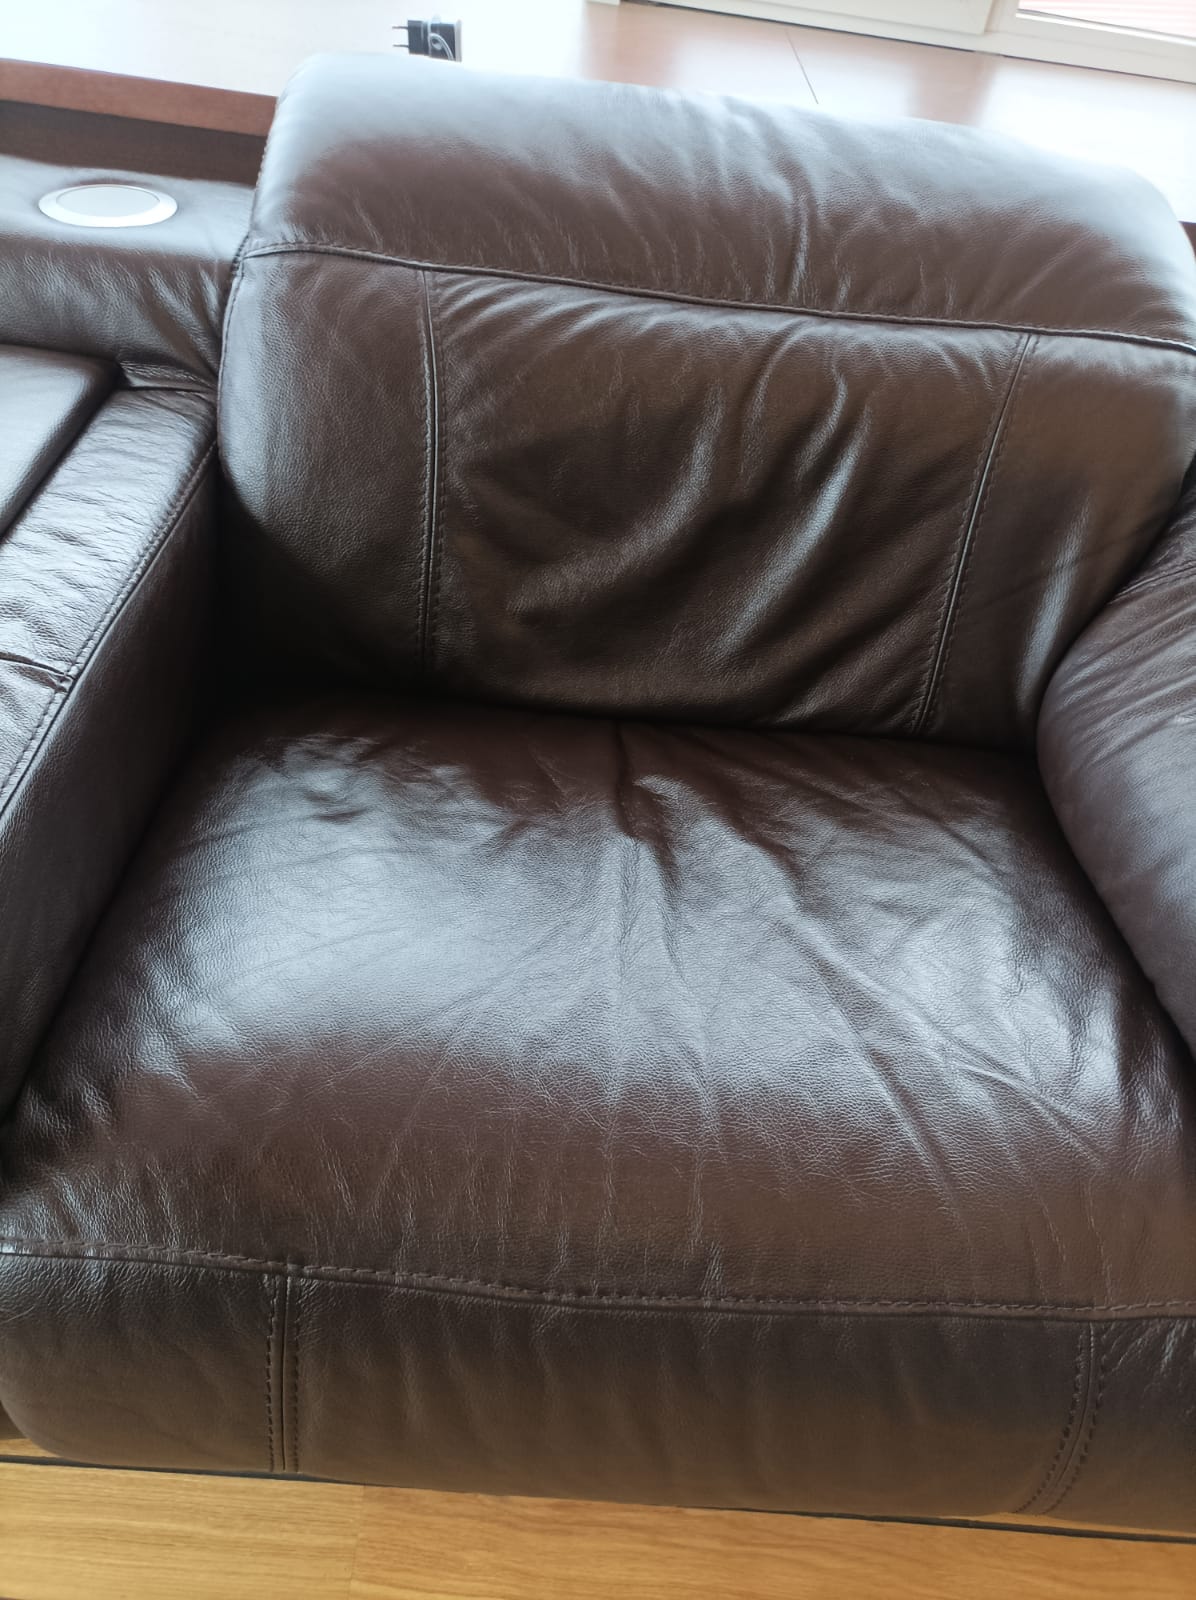 Химчистка кожаной мебели. Химчистка кожаного дивана. Кожаные диван из Дагестана.